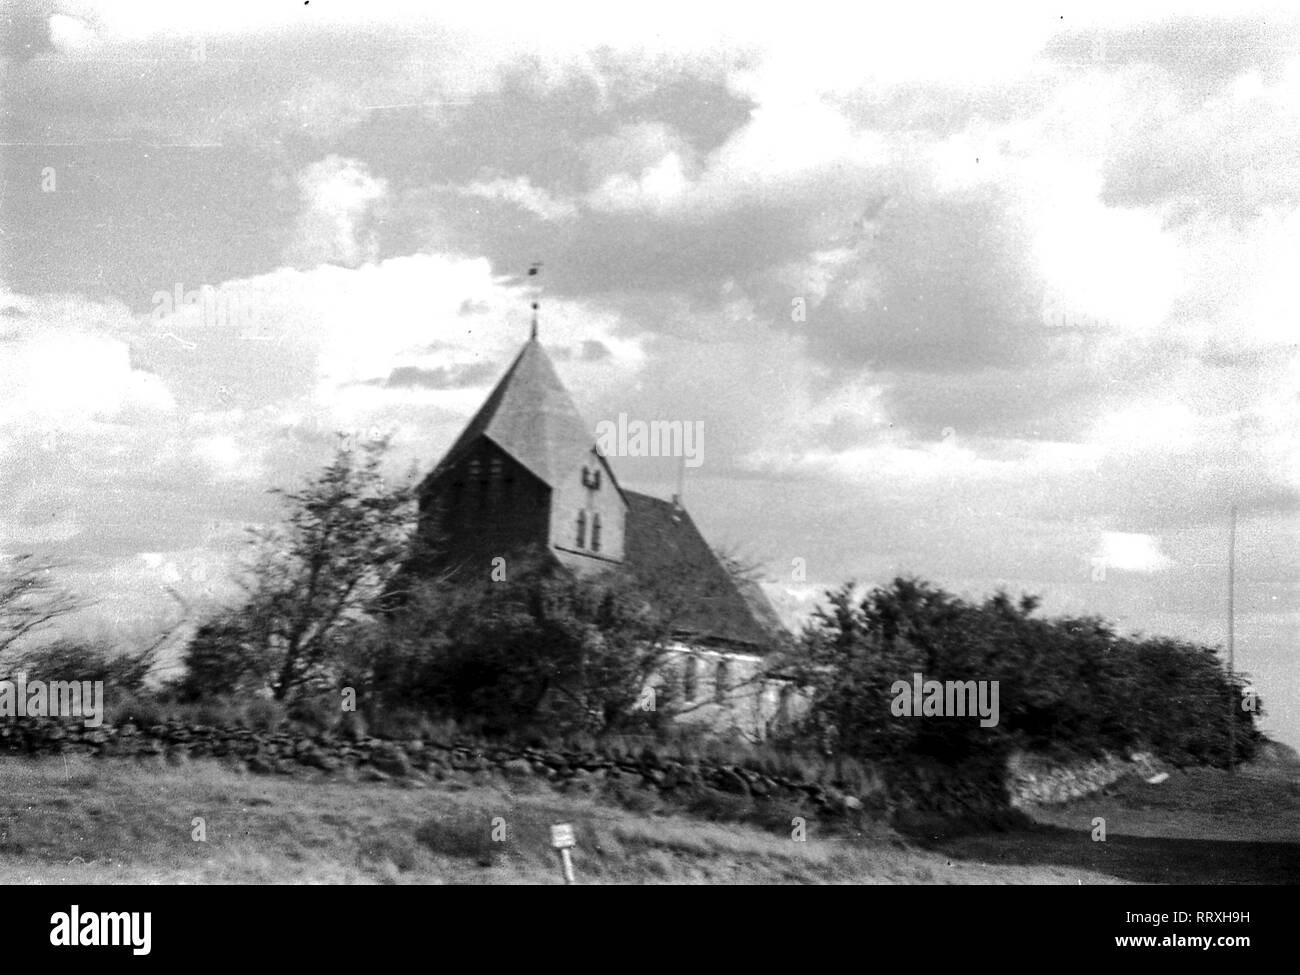 DER SCHIMMELREITER - The small church in Schobüll-Husum, where the flight in the film Schimmelreiter ended, 10/1933, I.12/25-38 Schimmelreiter Stock Photo